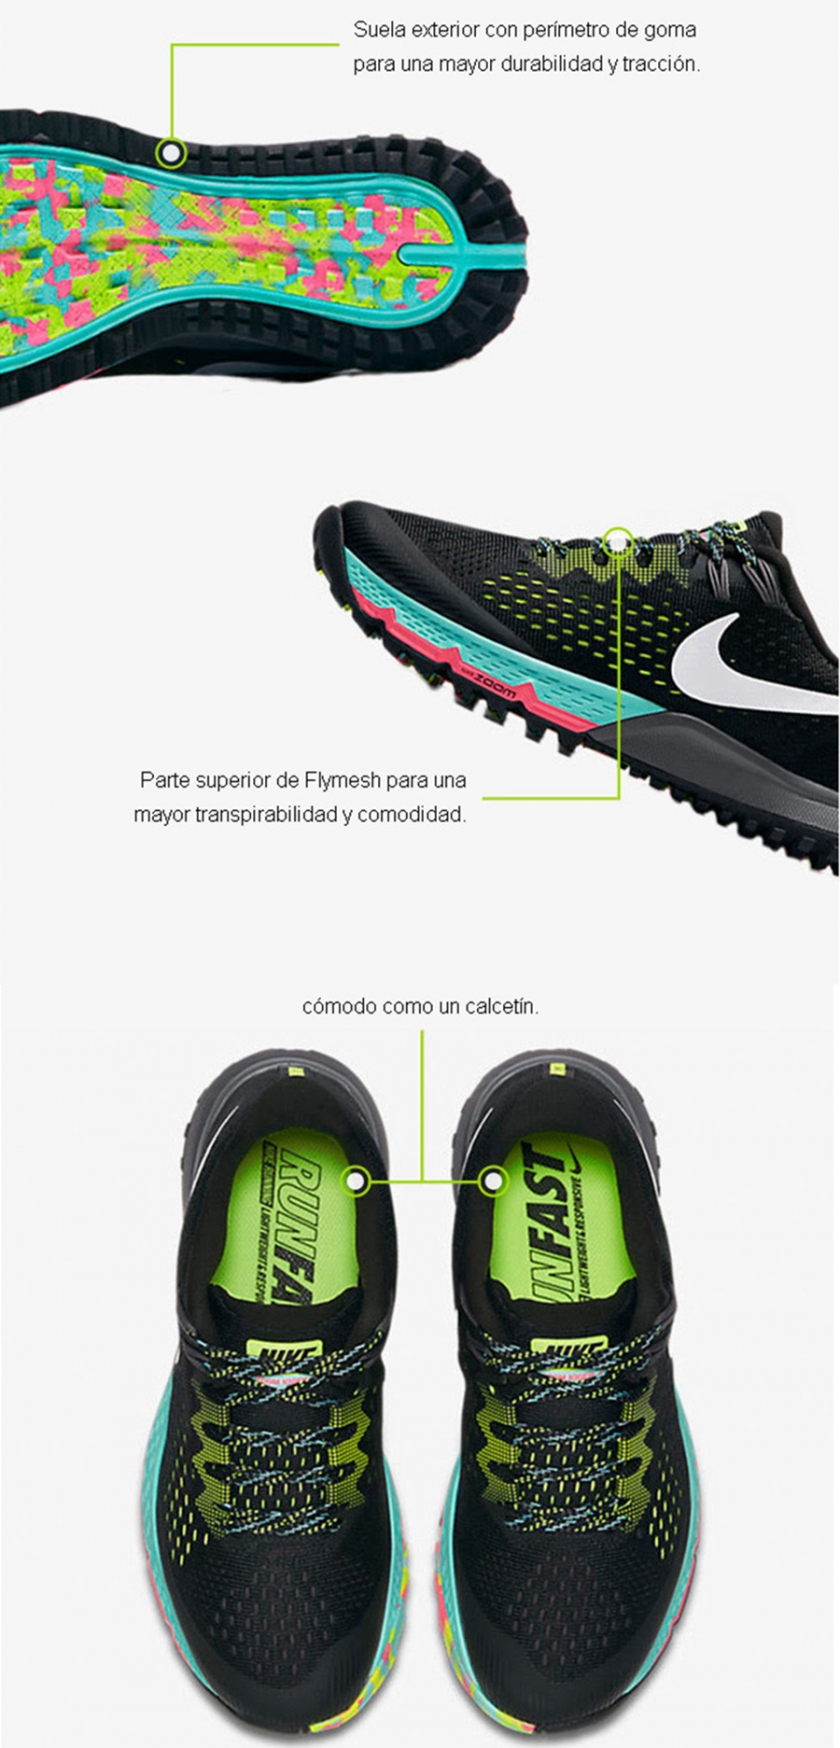 Nike Air Zoom Terra Kiger 4